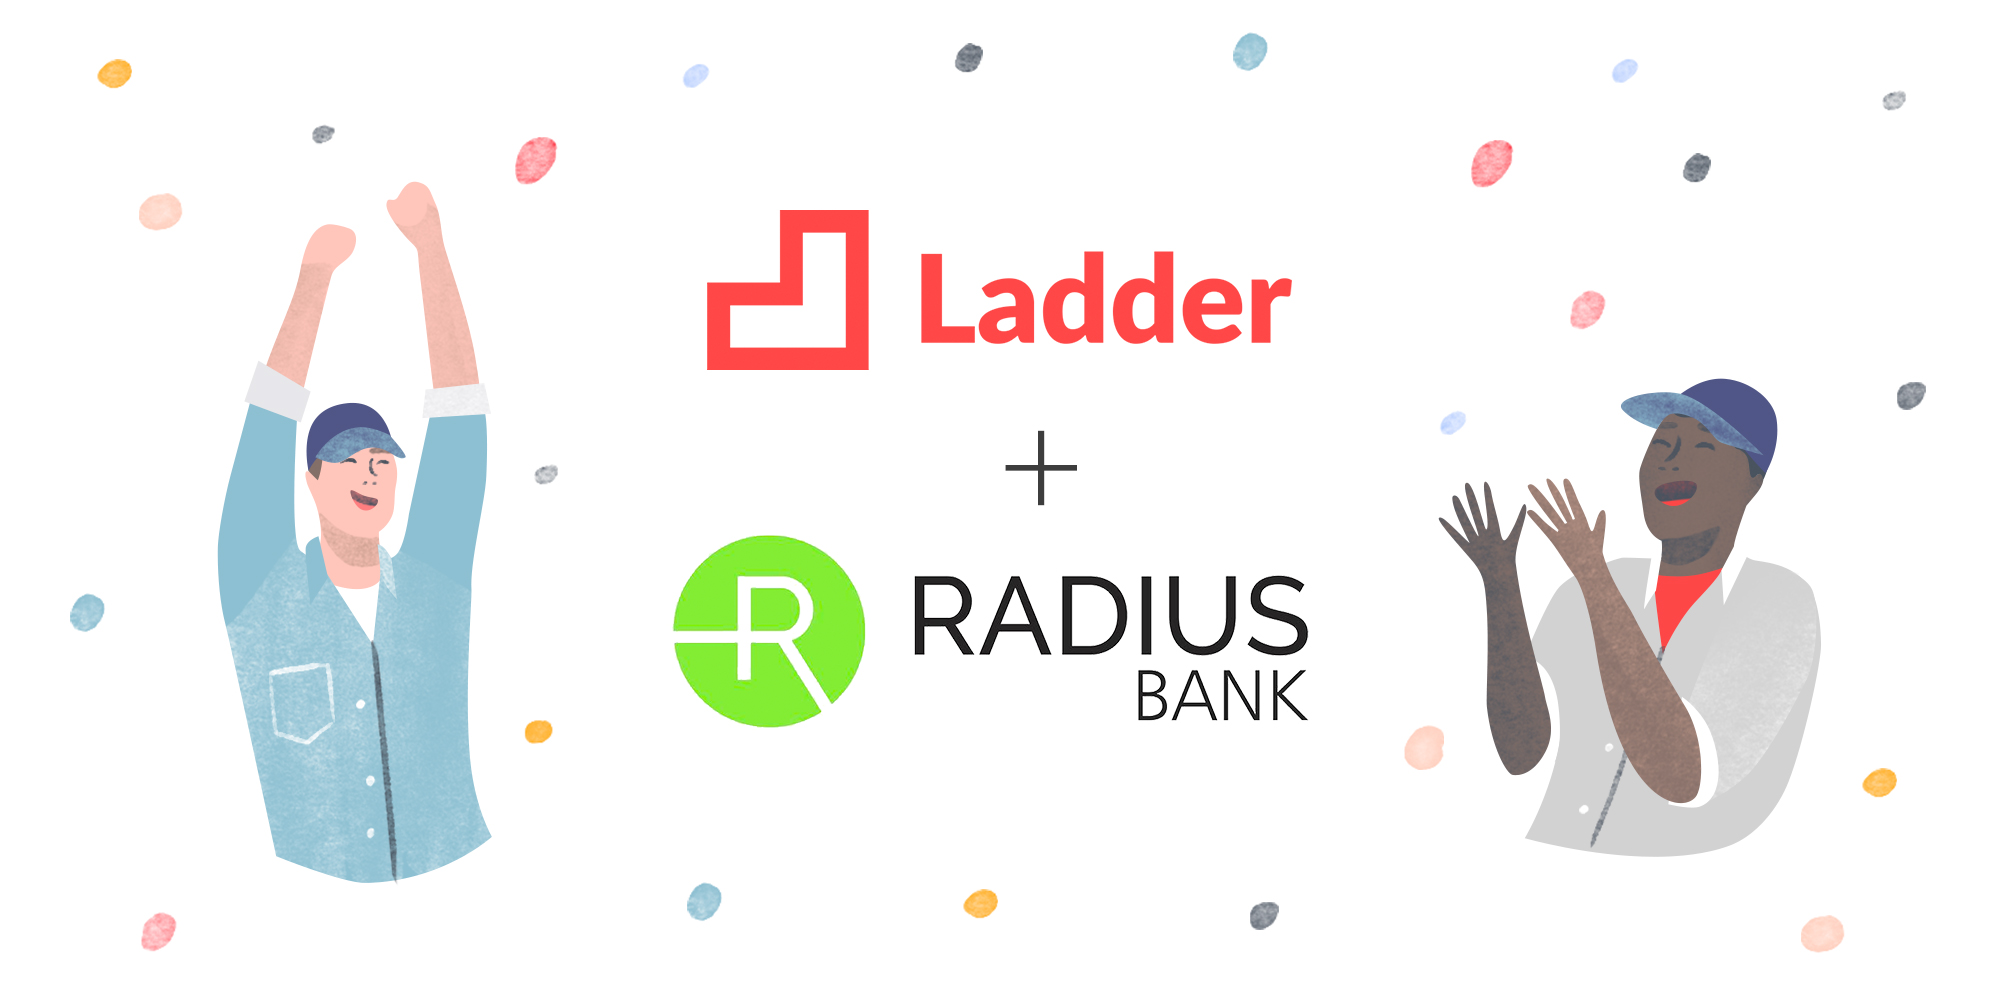 Ladder + Radius Bank